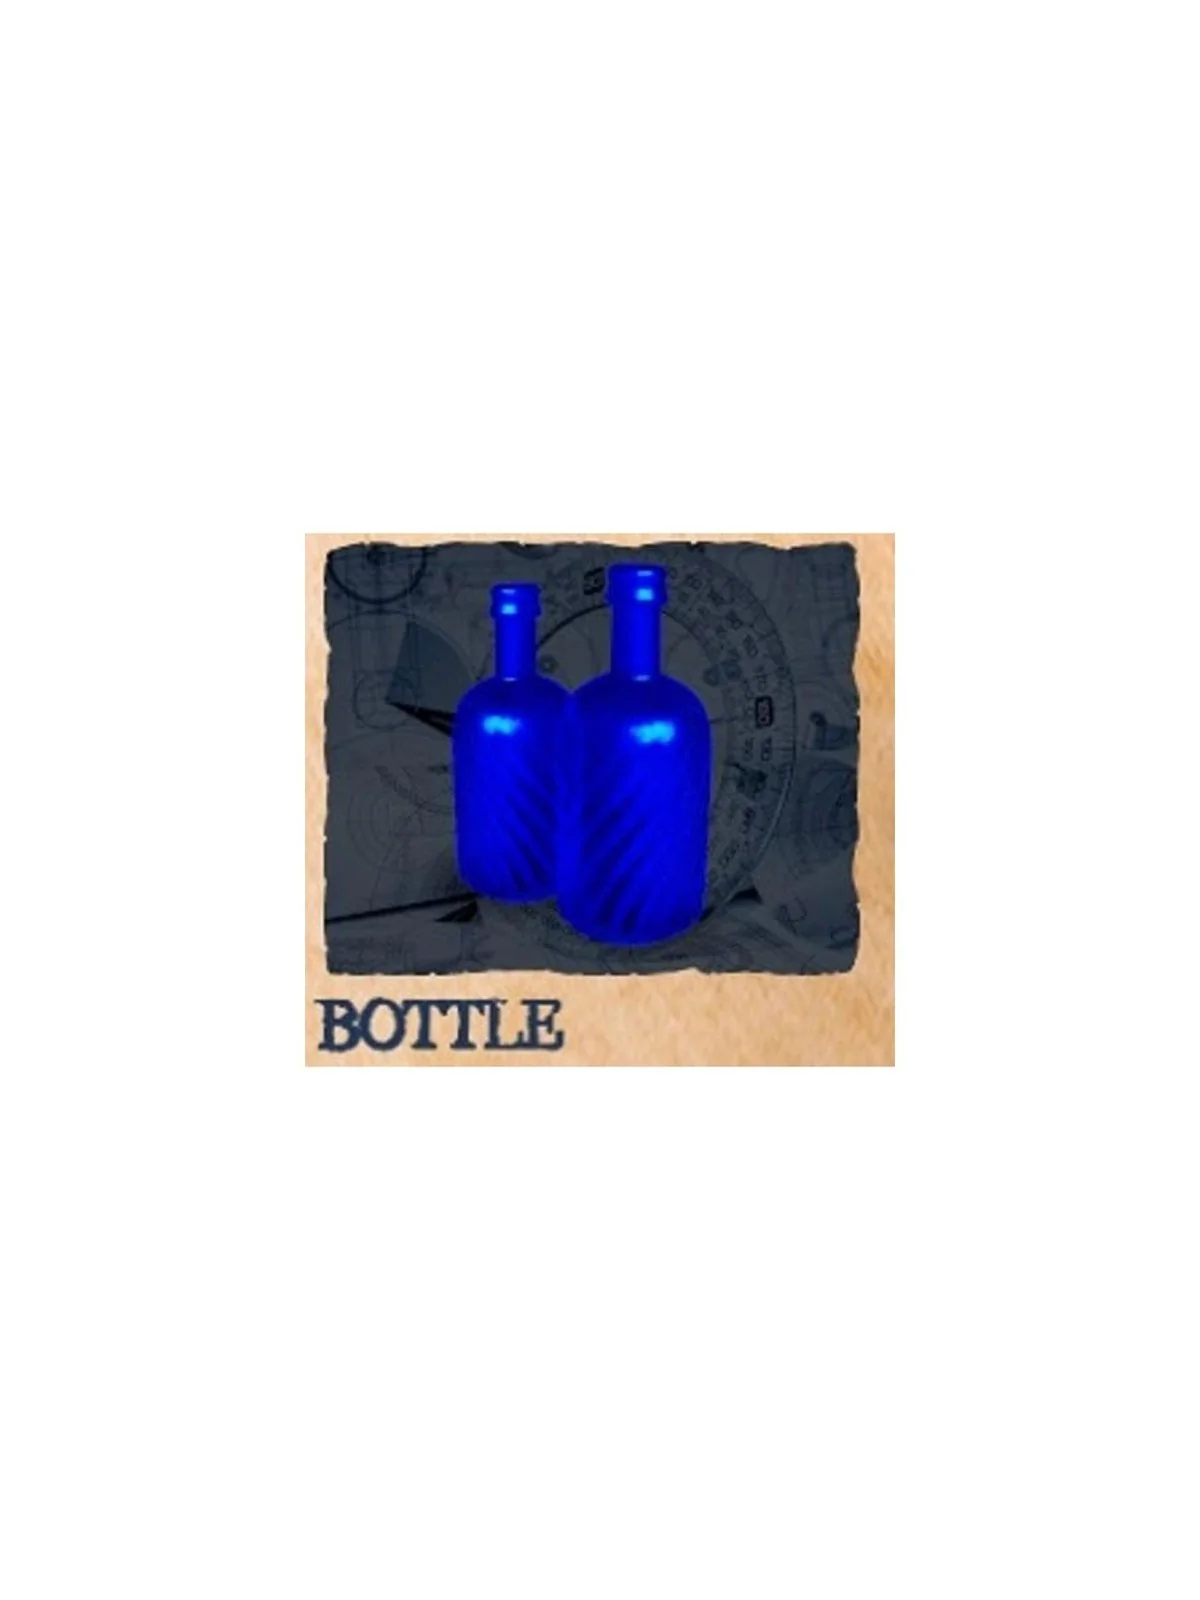 Comprar Juego de 10 Tokens de Botellas Azul barato al mejor precio 6,6